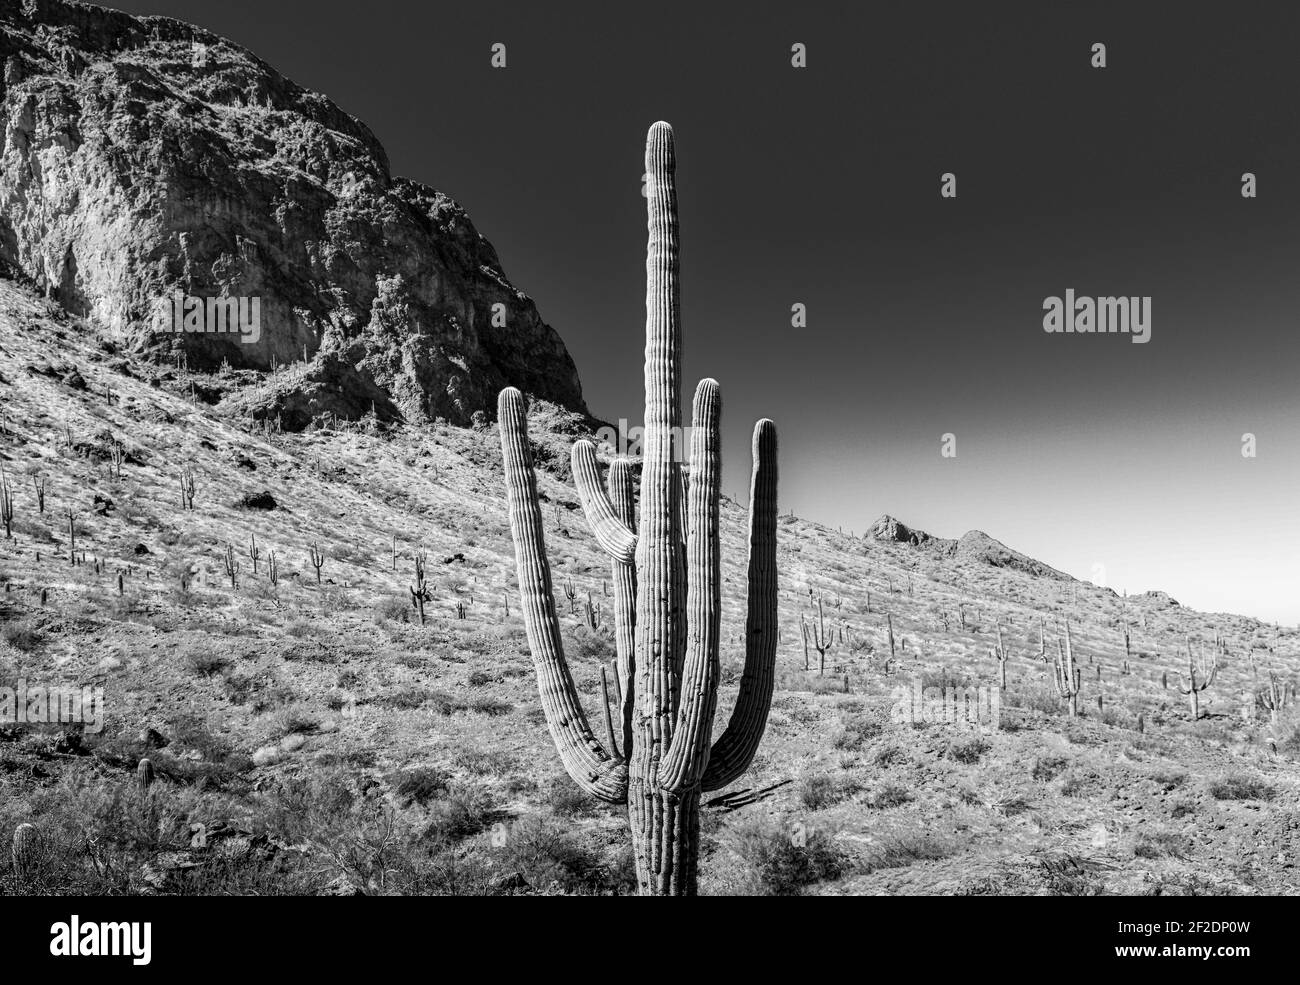 Cactus Saguaro avec des bras vers le haut avec le fond des sommets et des vallées dans le désert de Sonoran à Picacho, AZ, Etats-Unis en noir et blanc Banque D'Images